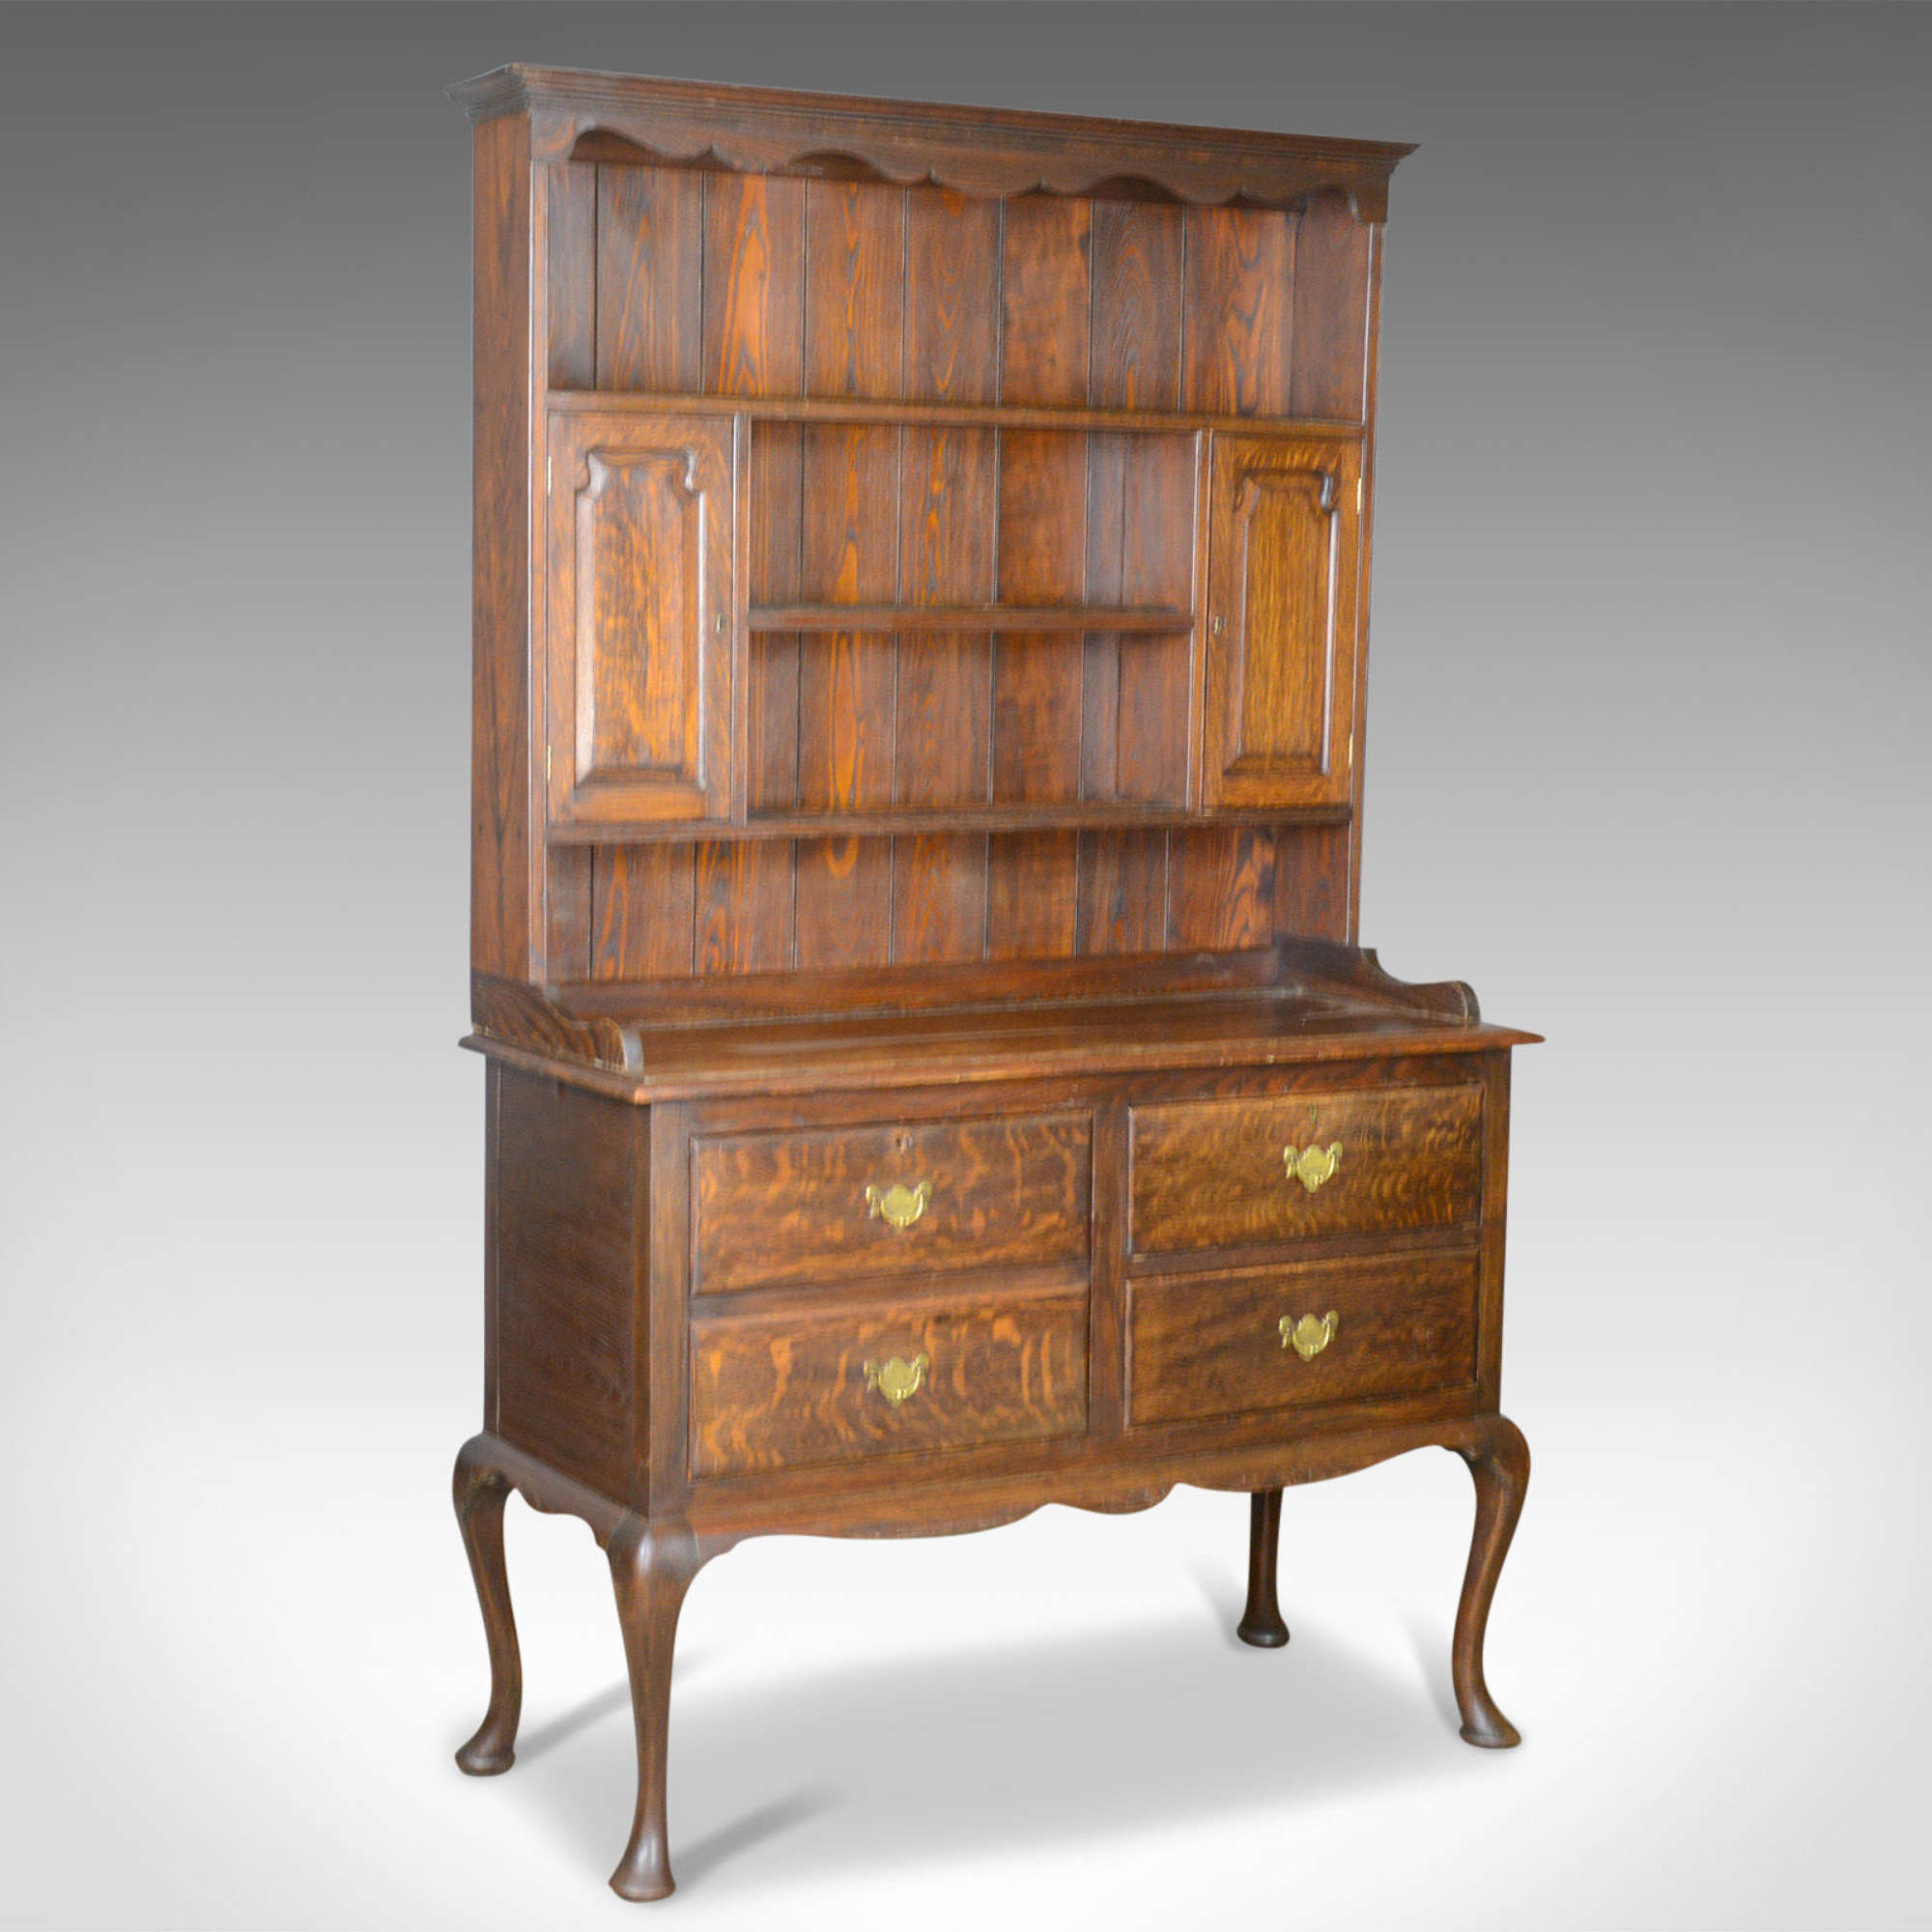 Antique Dresser, English, Oak, Victorian, Country Kitchen, Dresser Sideboard c.1870